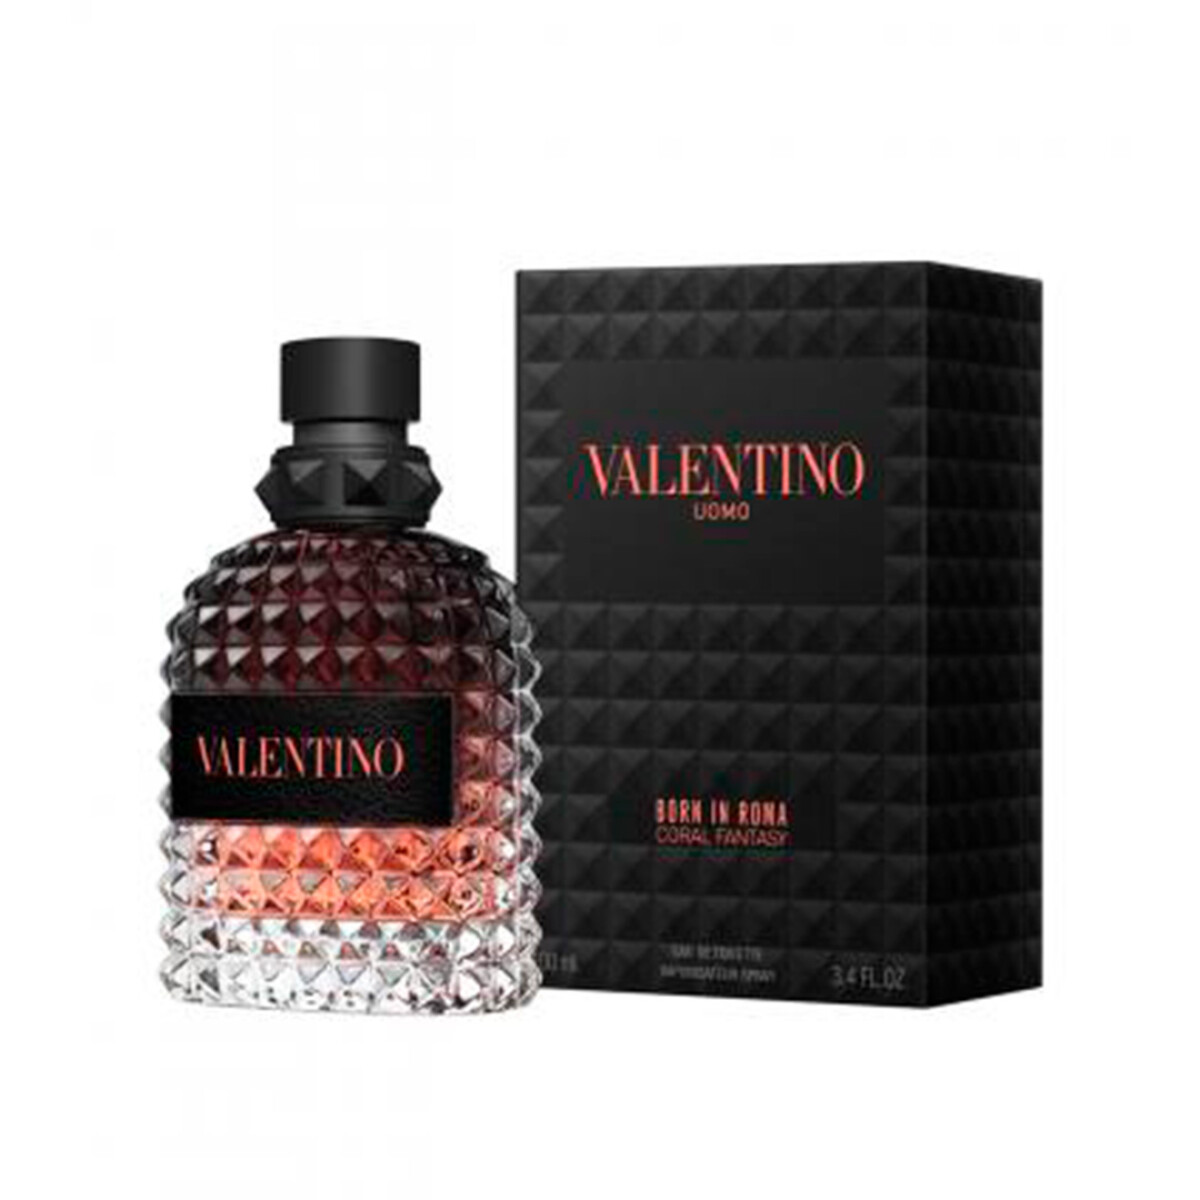 Perfume Valentino Uomo Born In Roma Coral Fantasy 100 Ml - 001 